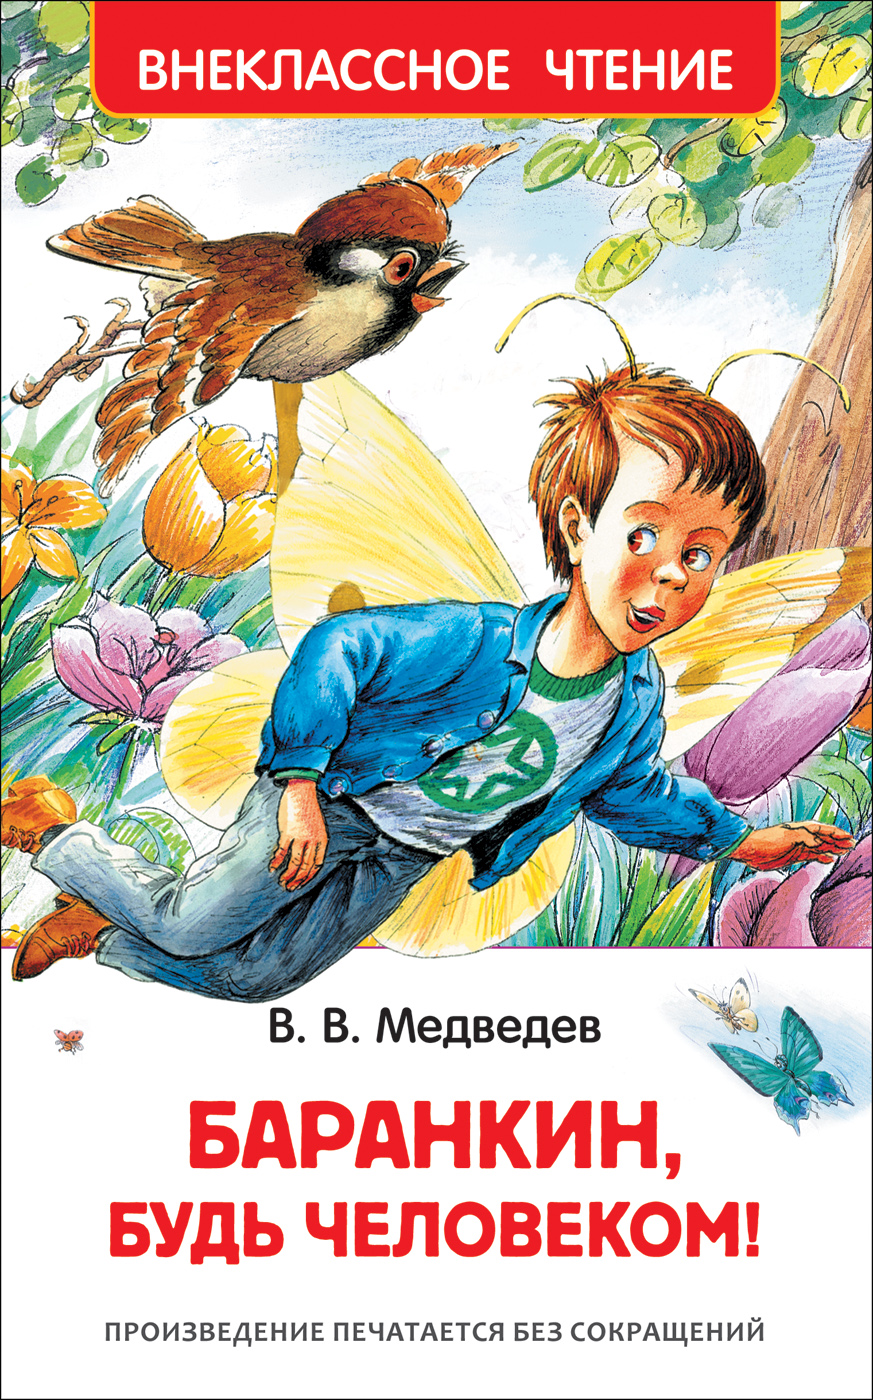 Книга 29897 "Баранкин, будь человекмо" ВЧ  Росмэн - Пермь 